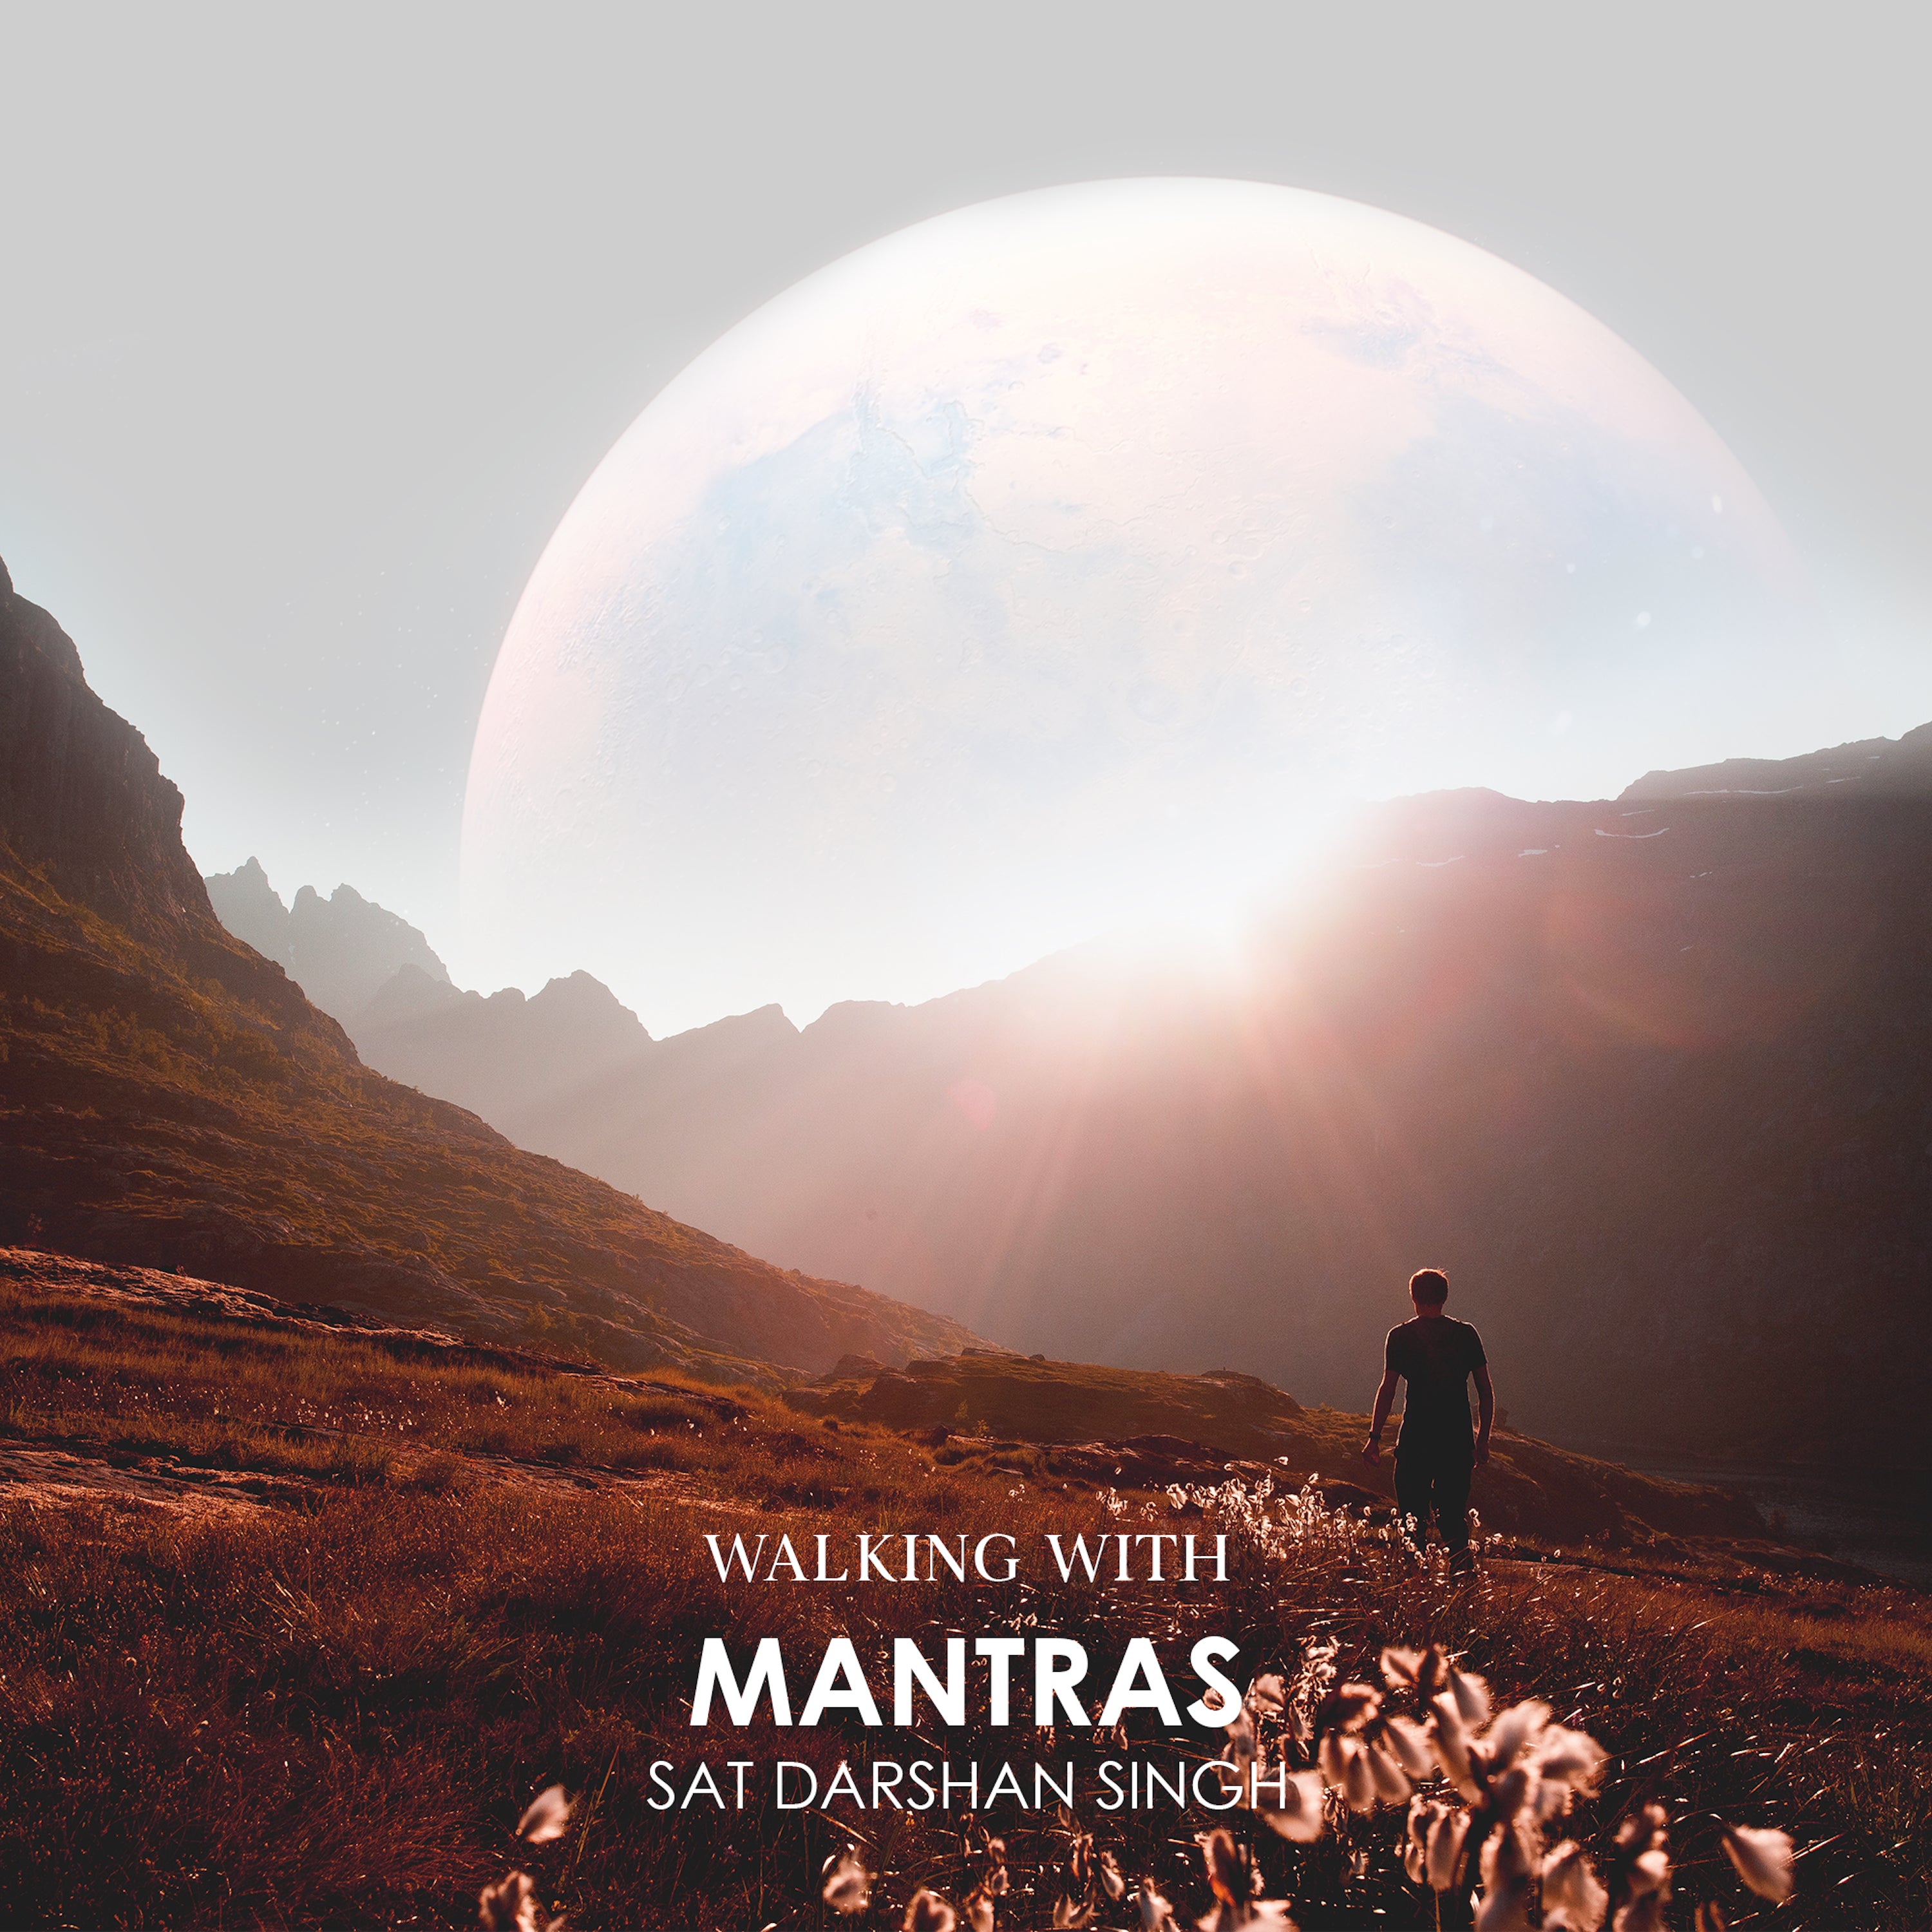 Walking with Mantras - Sat Darshan Singh komplett